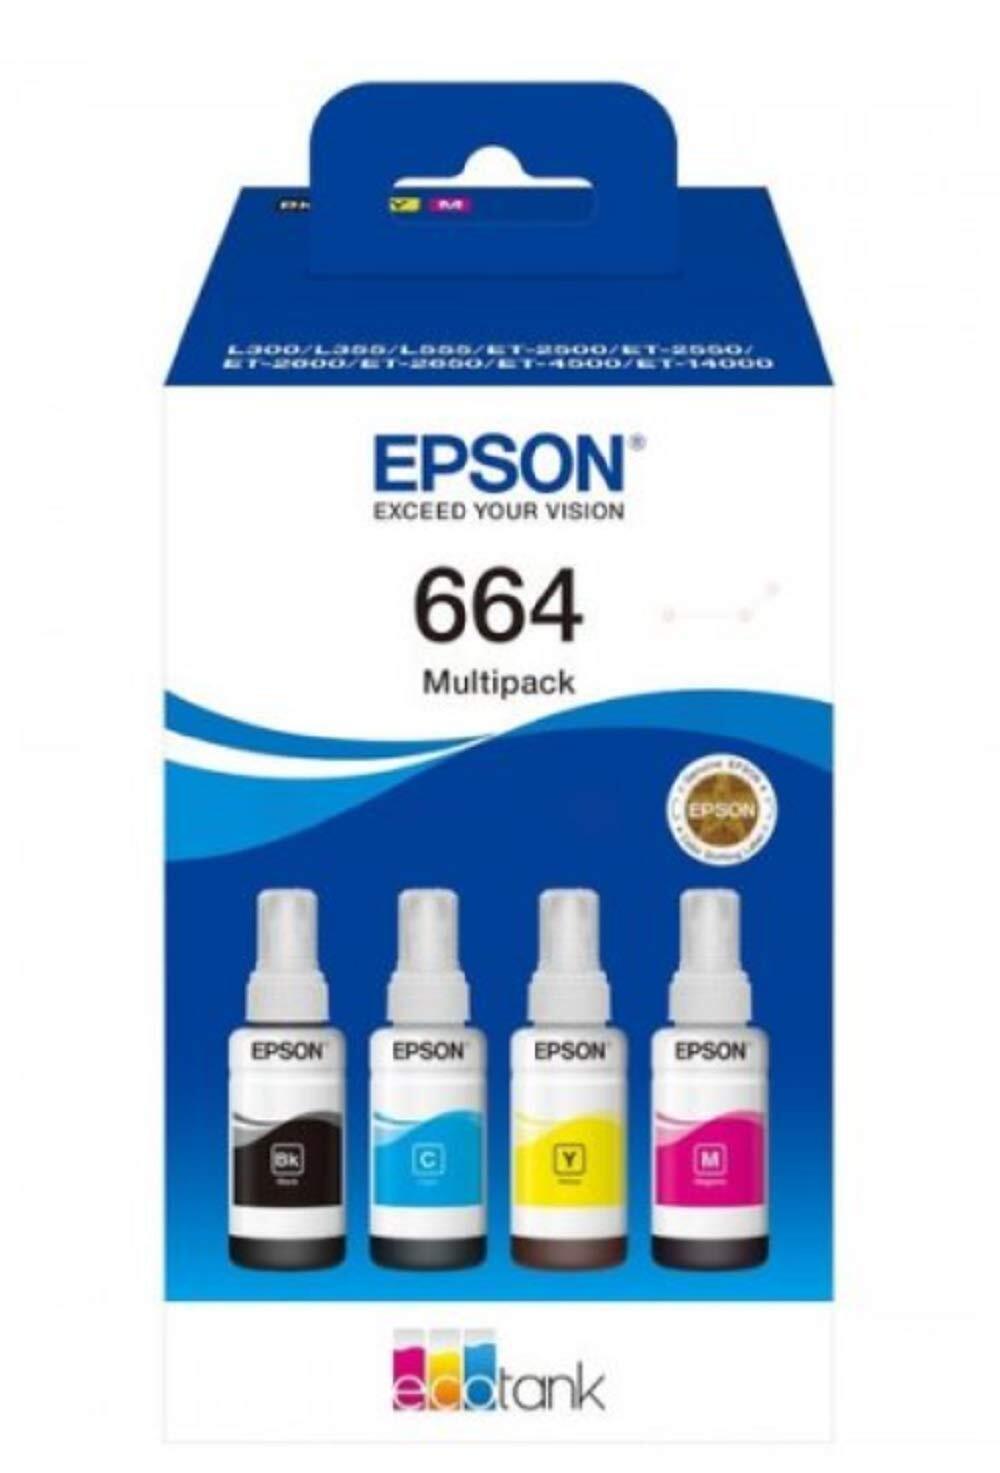 Epson C13T664640 Tinte (4) Cyan, Magenta, gelb, schwarz 280 ml 25.000 Seiten Fla